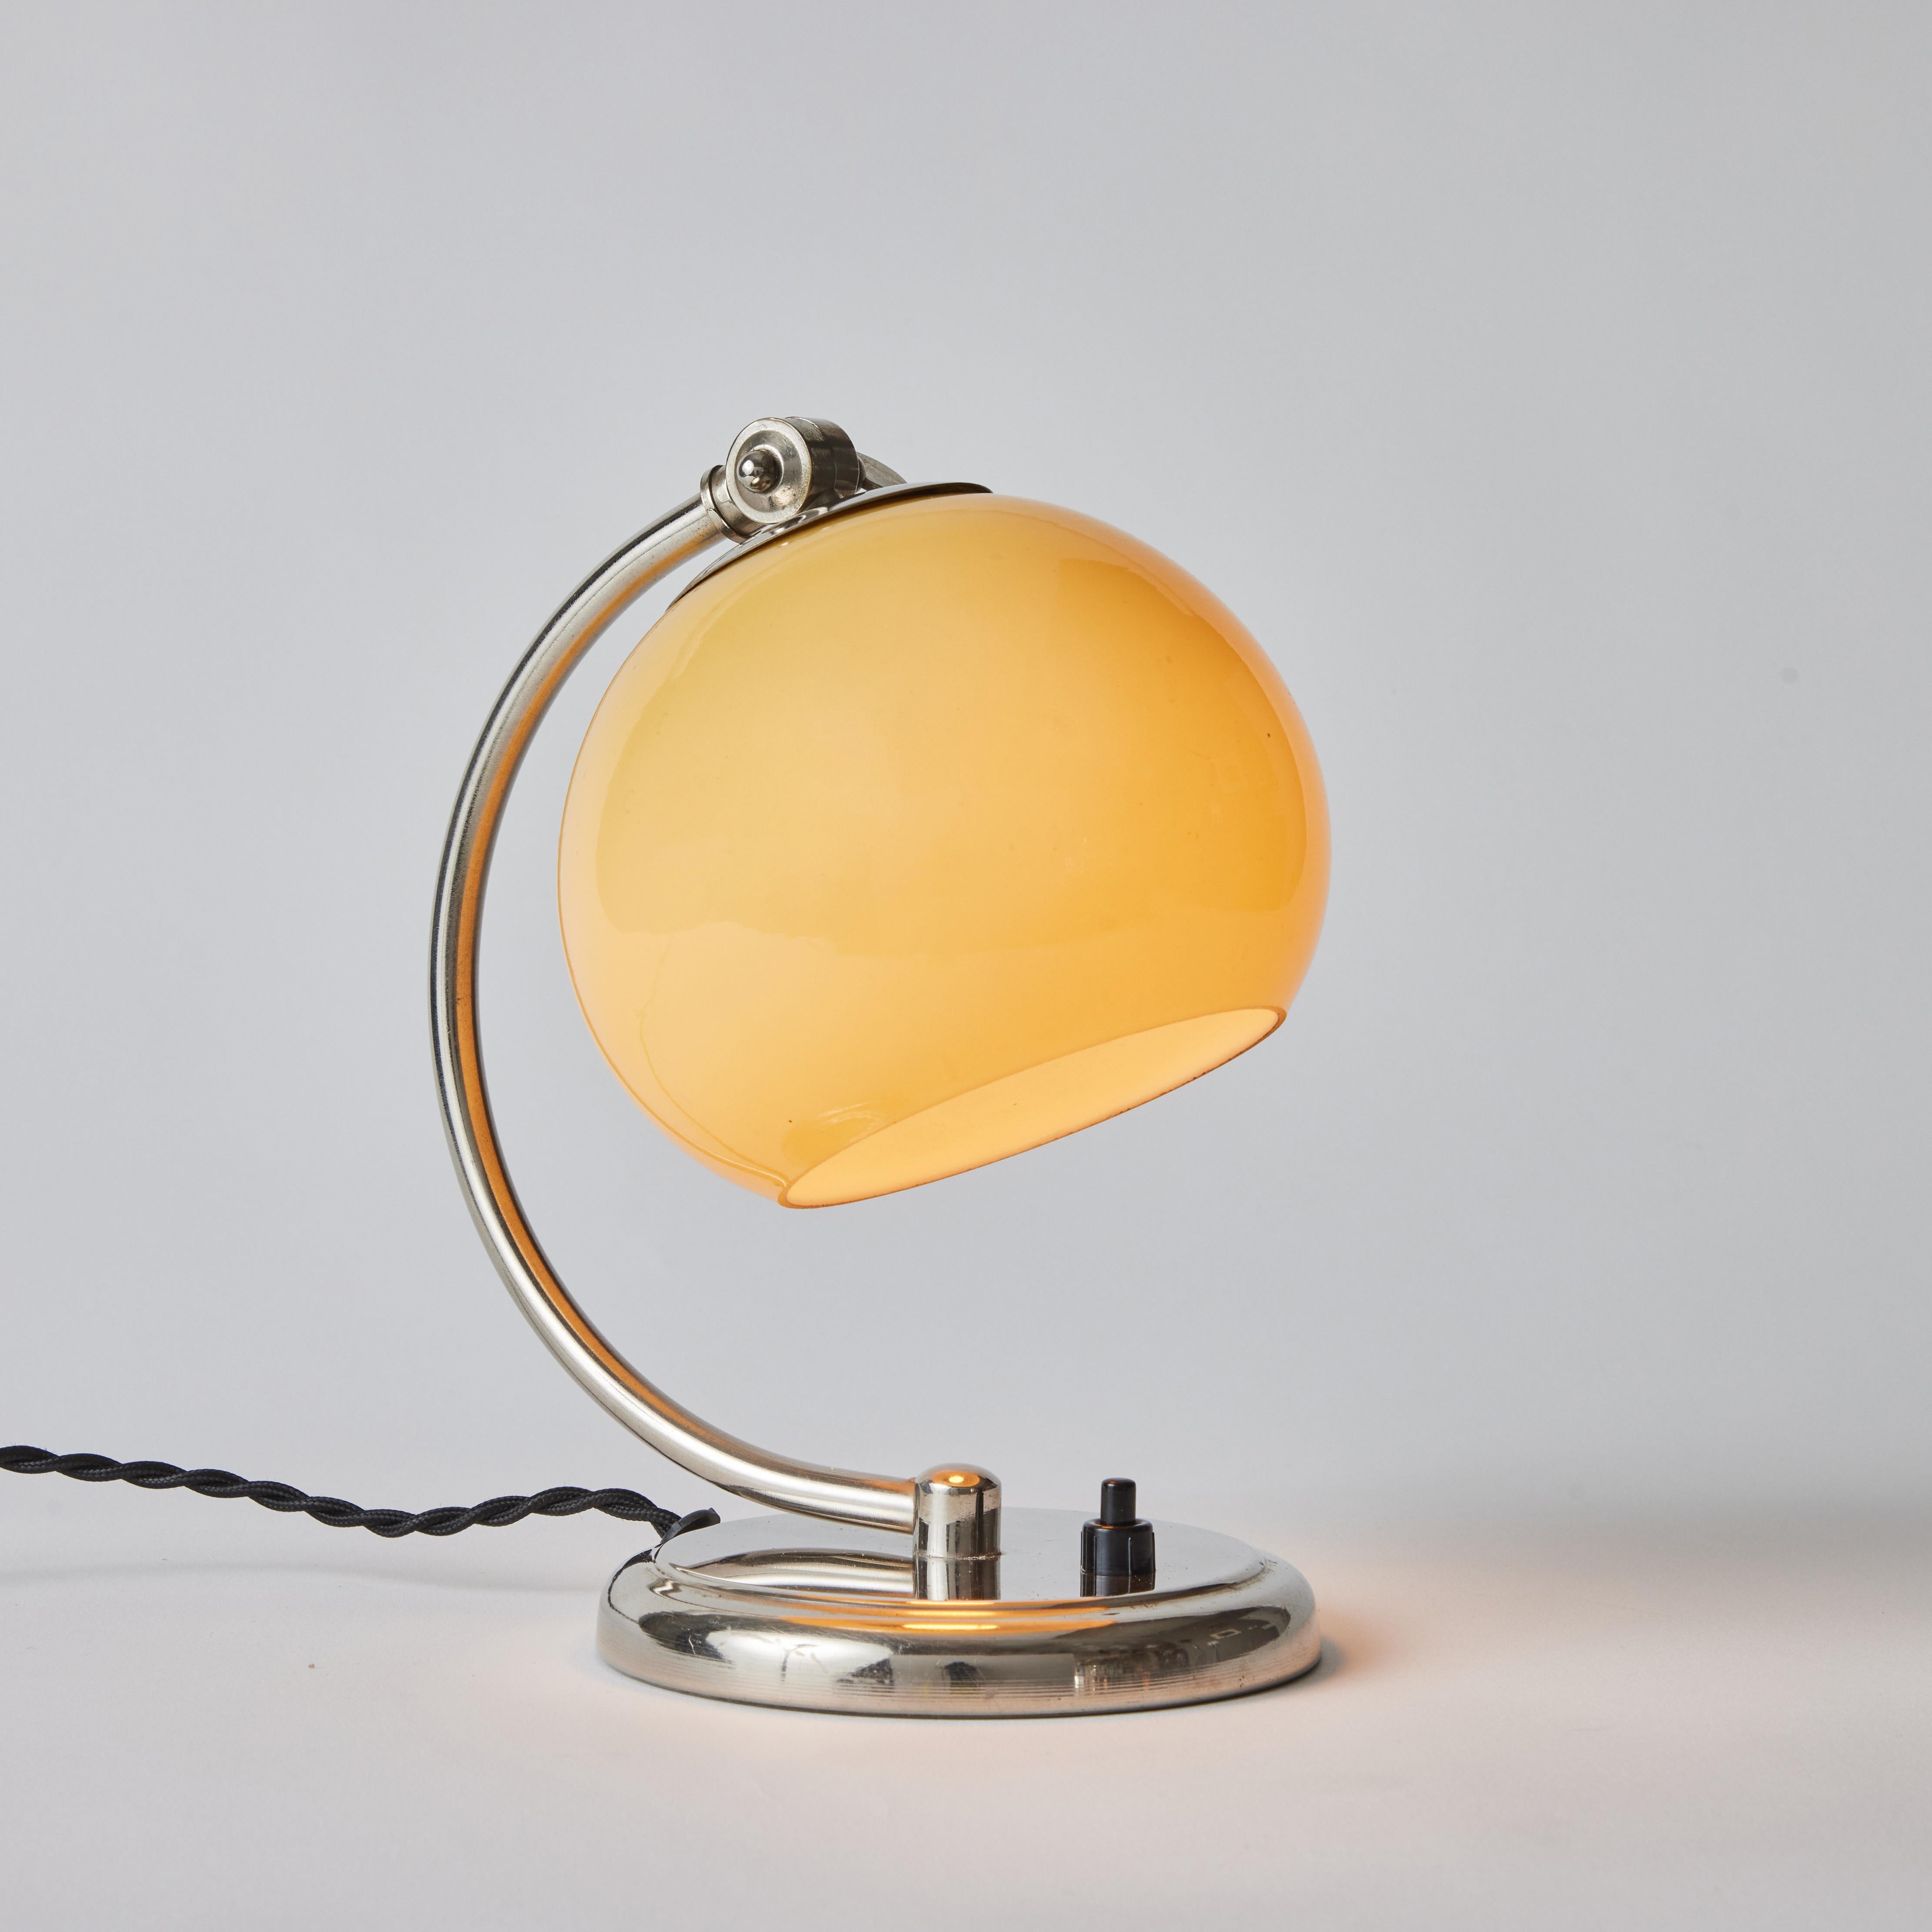 Lampe de table en chrome et verre opalin Mauri Almari pour Idman, années 1950. 

Une lampe rare et élégante exécutée en métal chromé et verre opalin soufflé. Contemporain de Paavo Tynell, le travail ultra raffiné d'Almari a fait de lui, ces